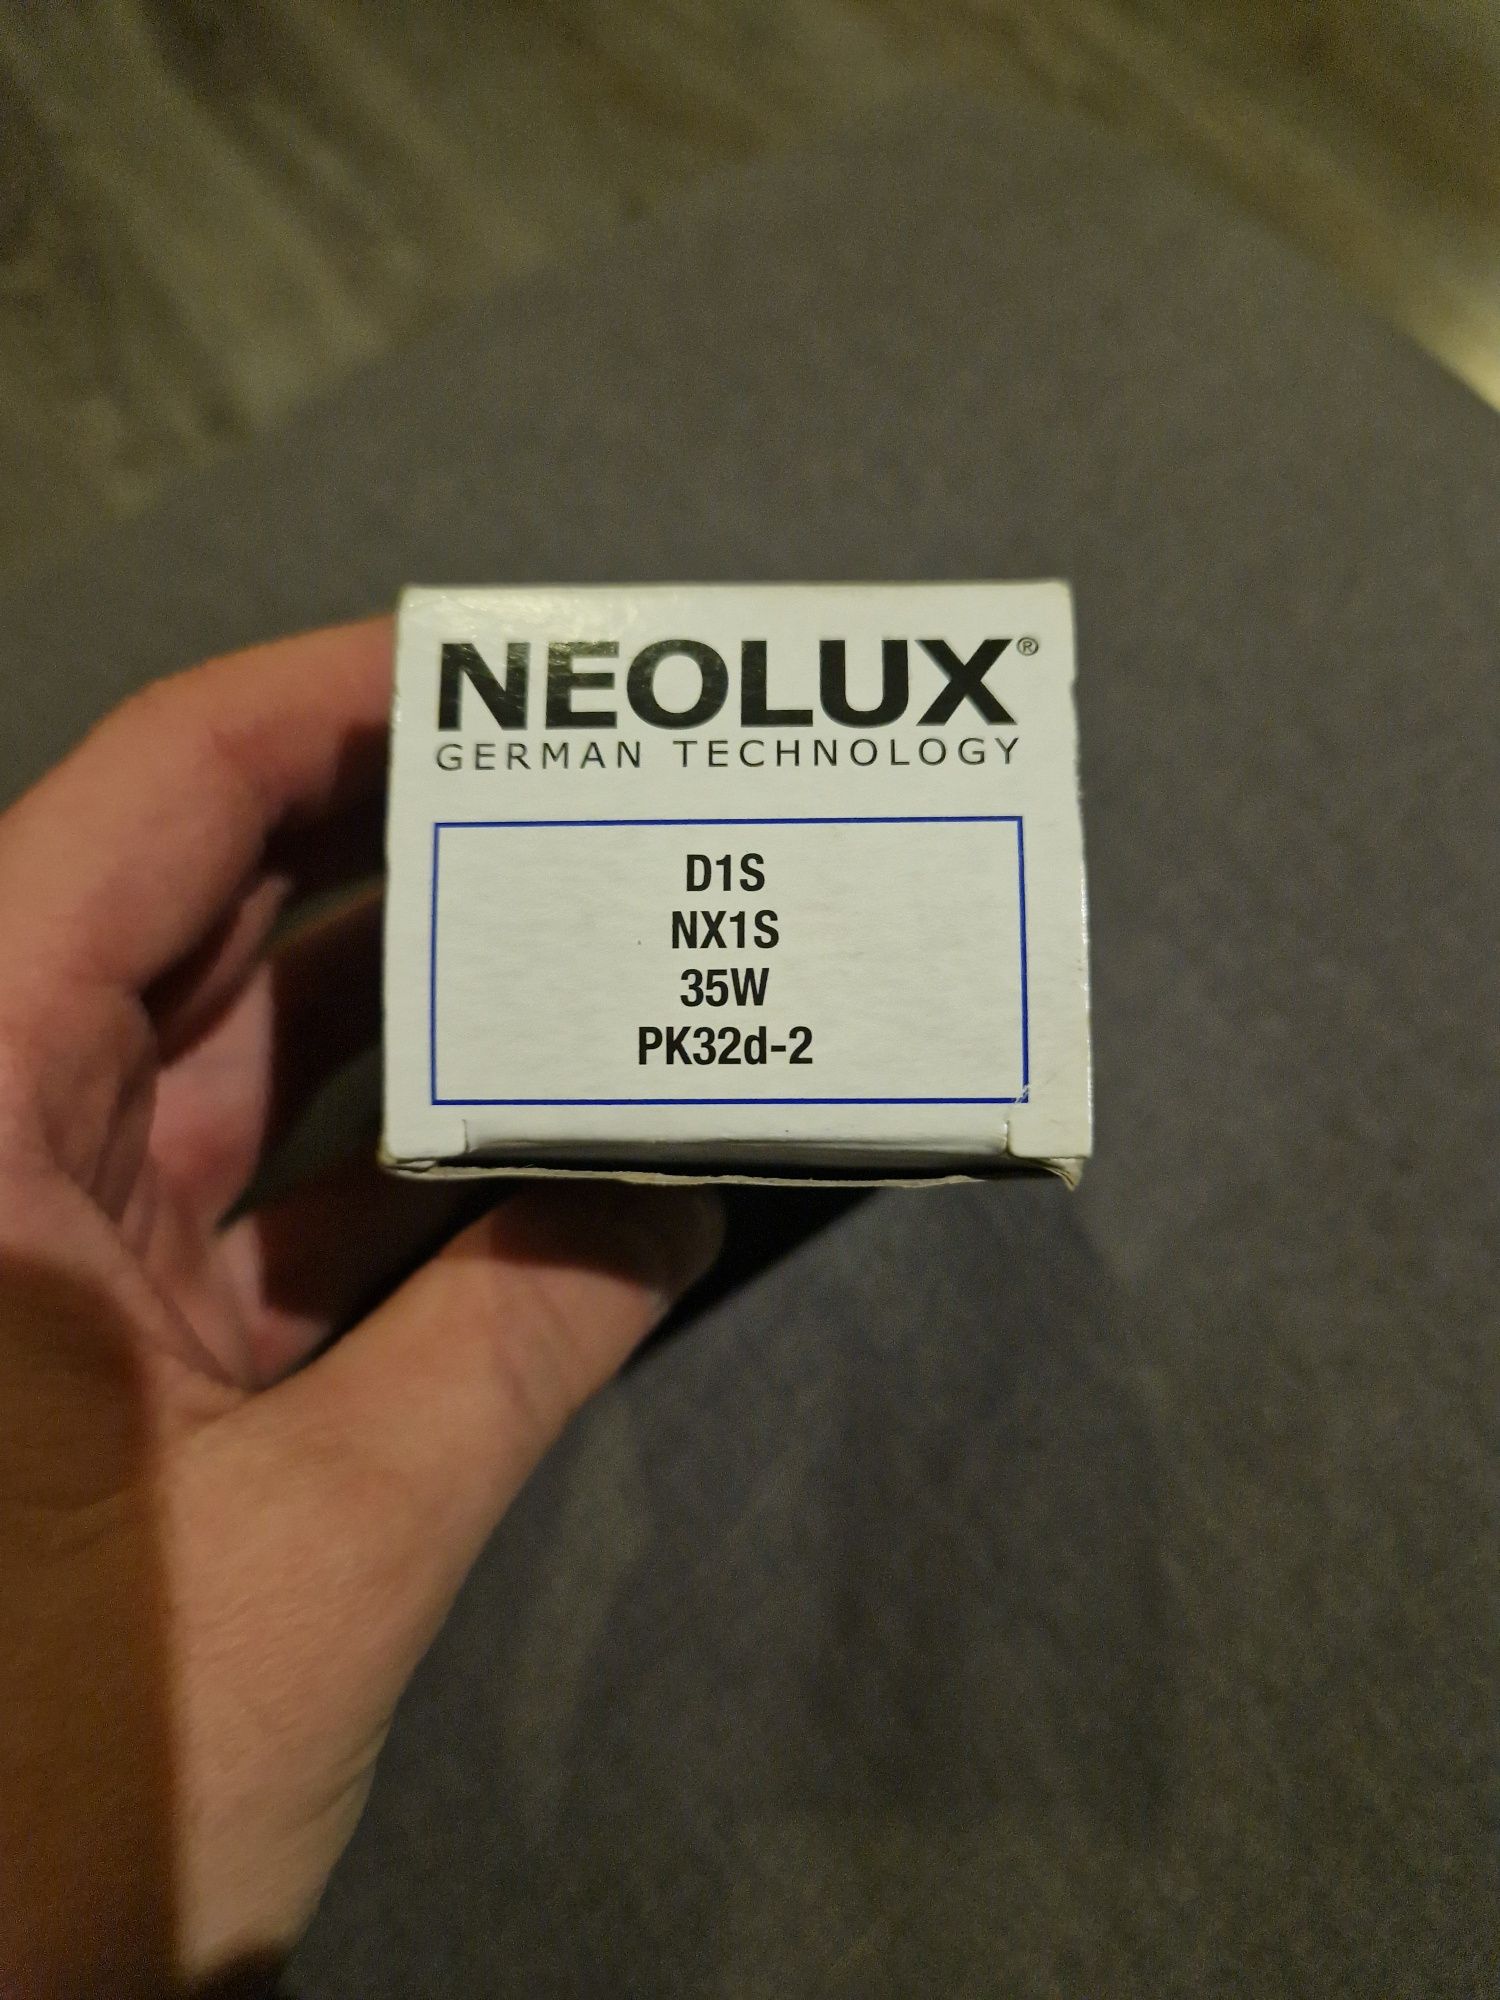 **Ksenon Neolux D1S NX1S 35W**